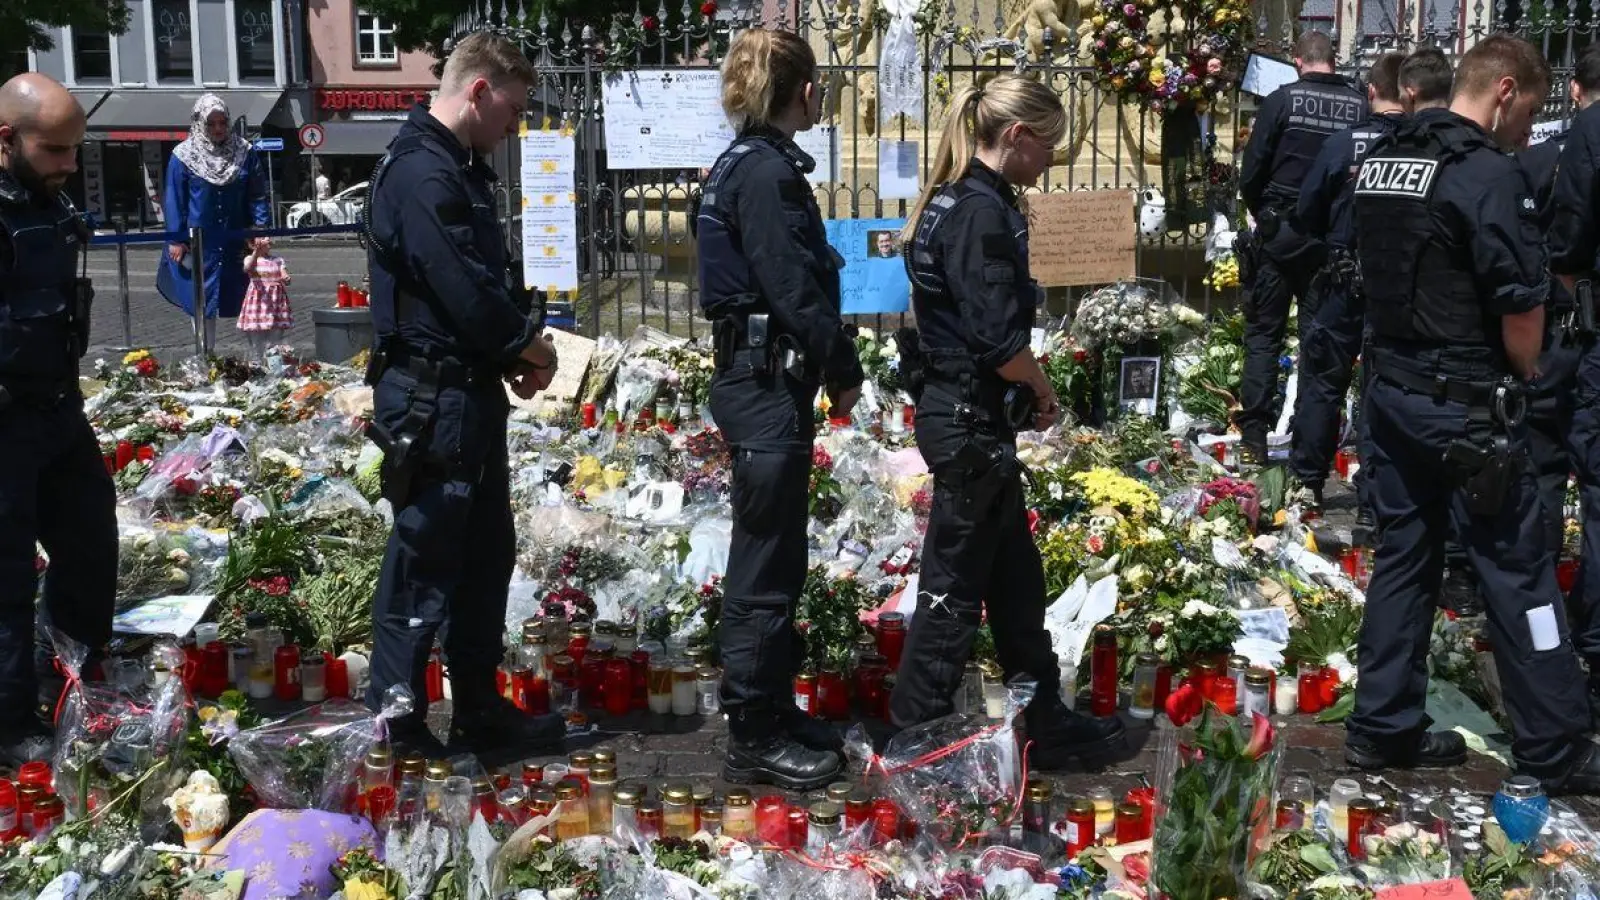 Polizisten stehen auf dem Marktplatz vor einem Gedenkplatz für einen bei einer Messerattacke getöteten Polizisten. (Foto: Bernd Weißbrod/dpa)